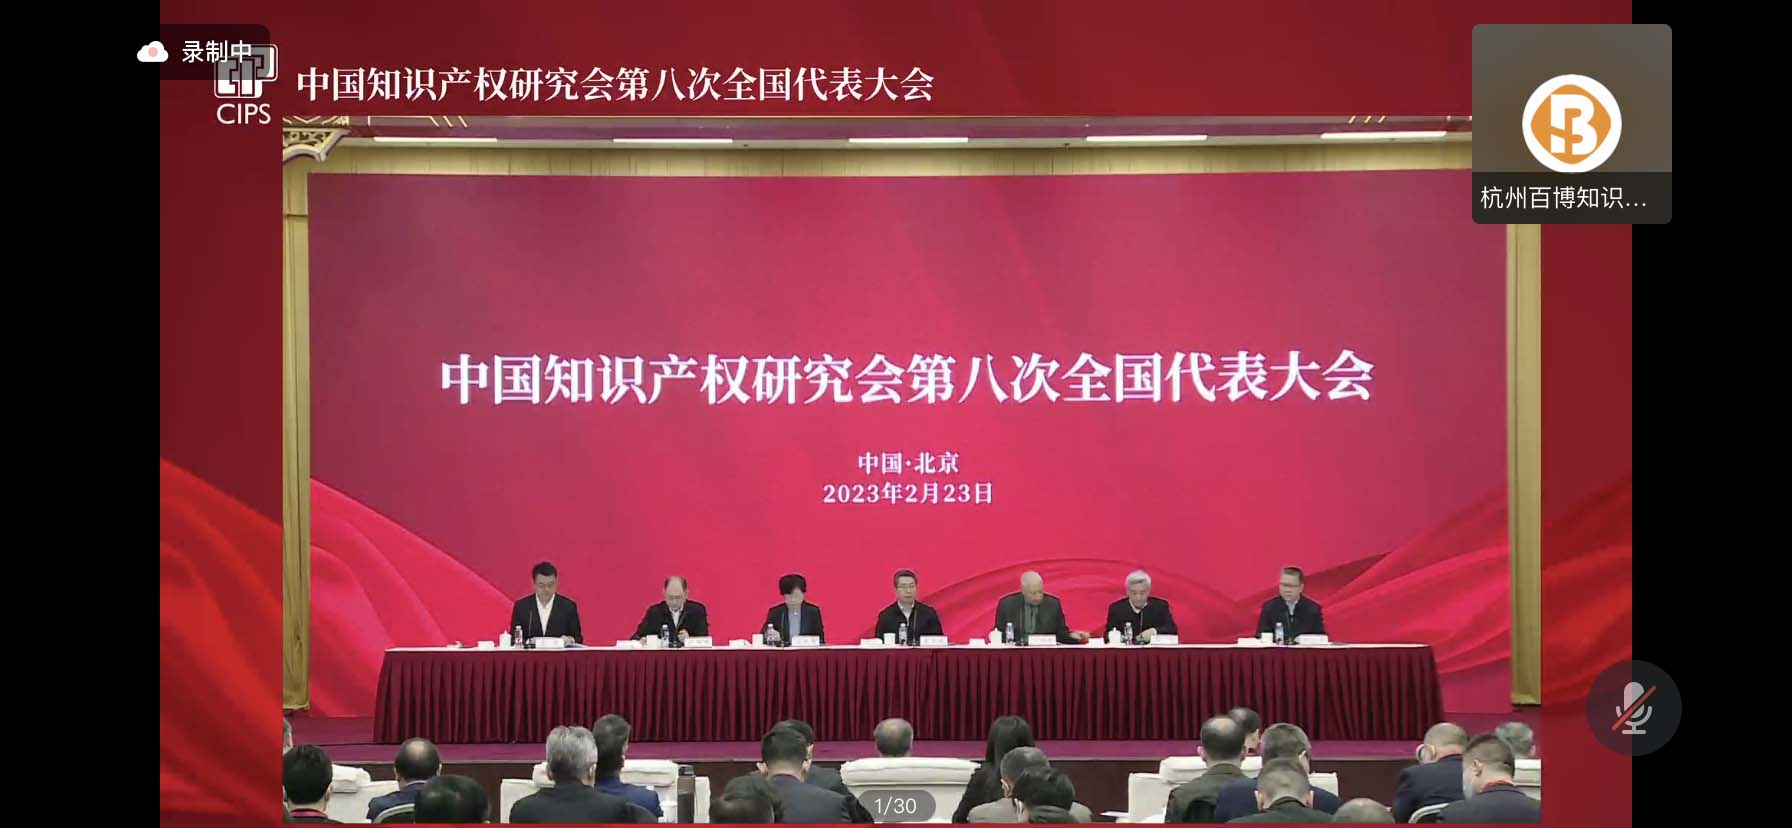 中国知识产权研究会第八次全国代表大会.jpg